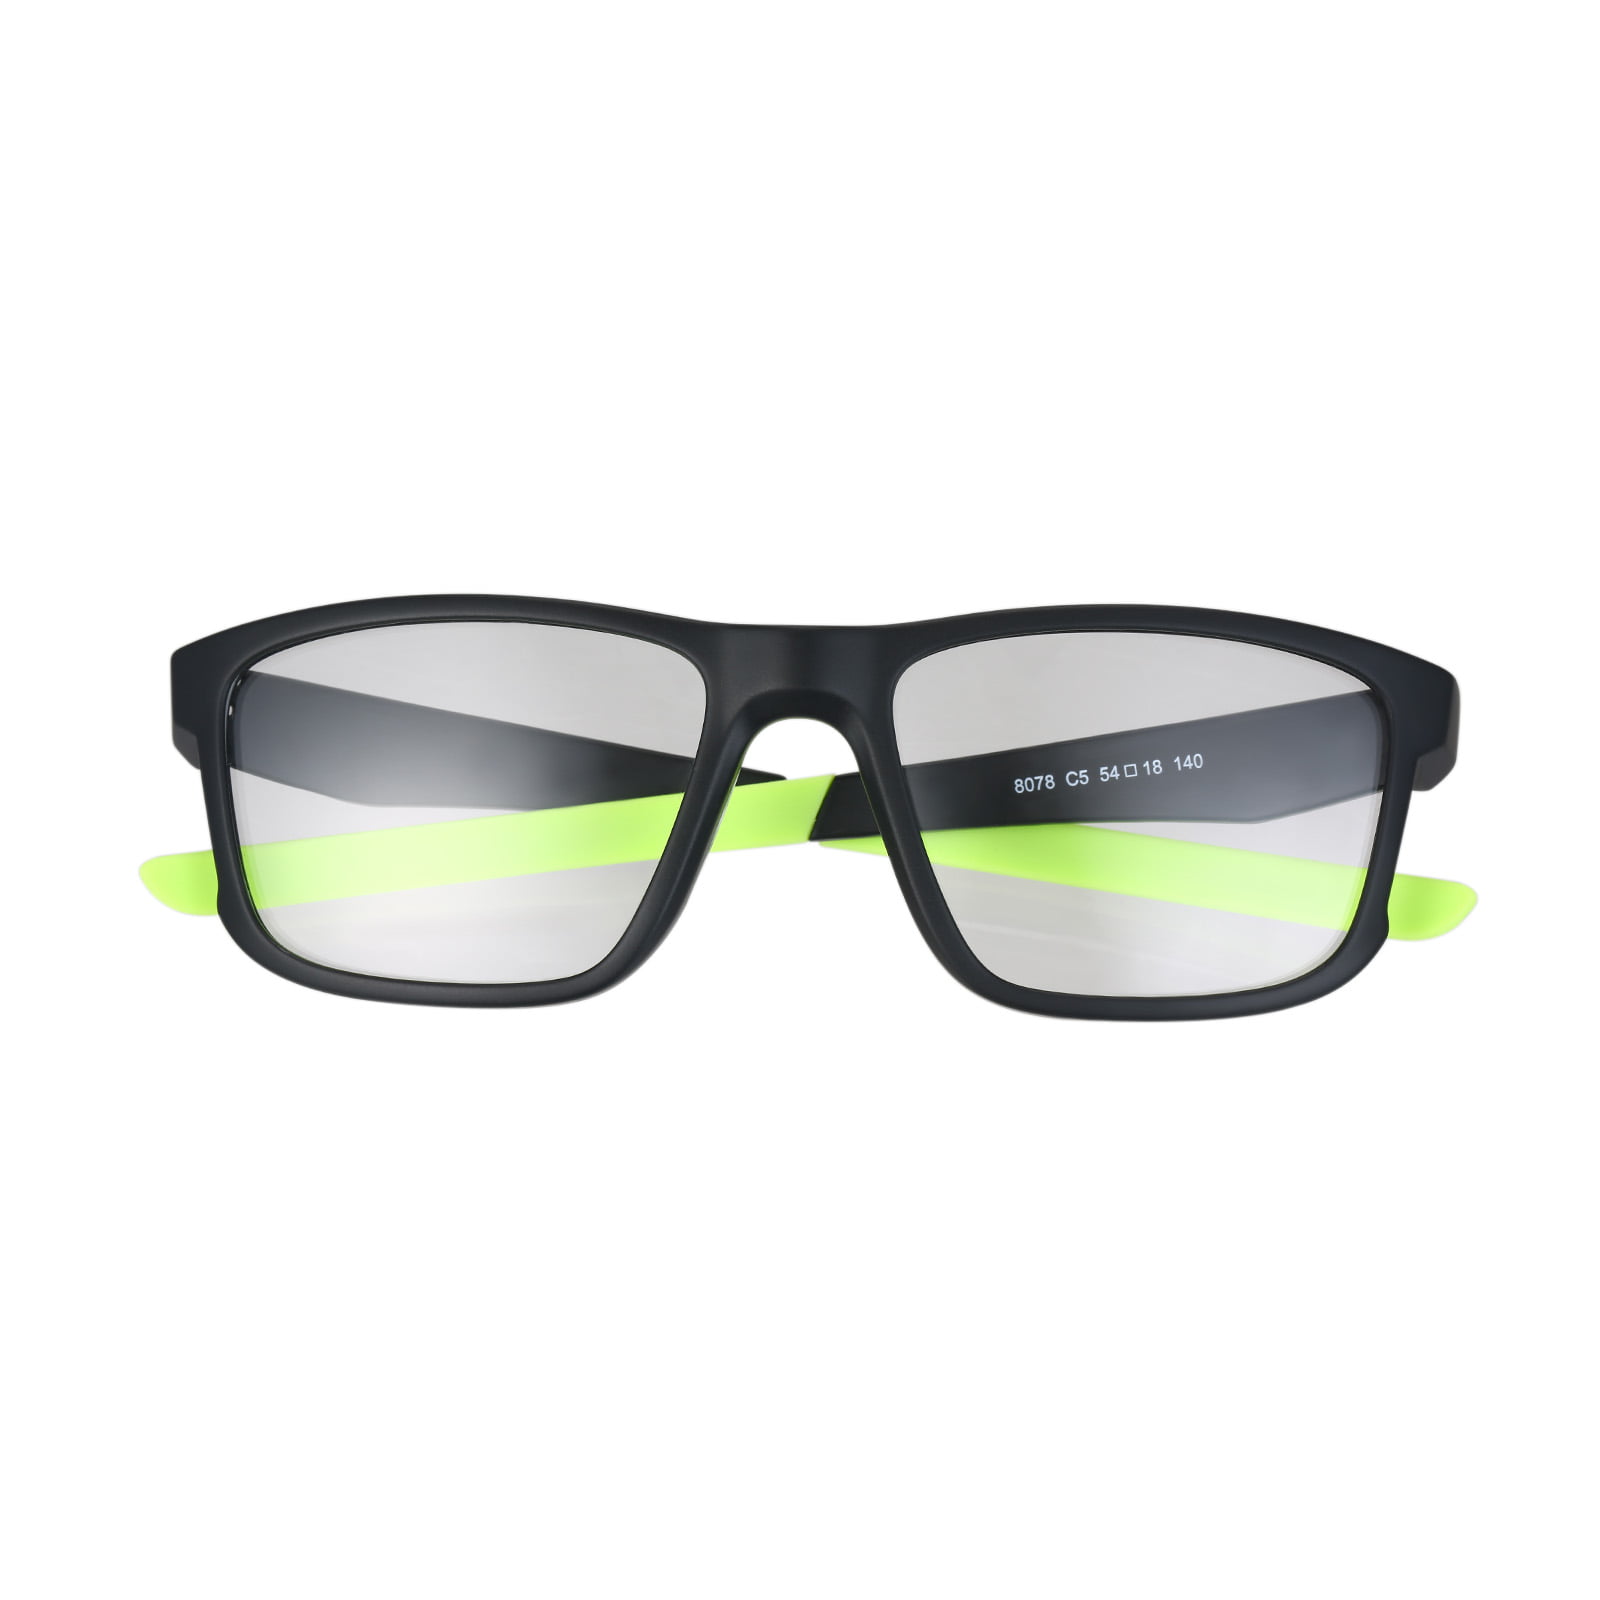 Unisex College Stylish Square Non-Prescription Eyeglasses Glasses Clear Lens Full Frame Eyewear For Boys Girls Students